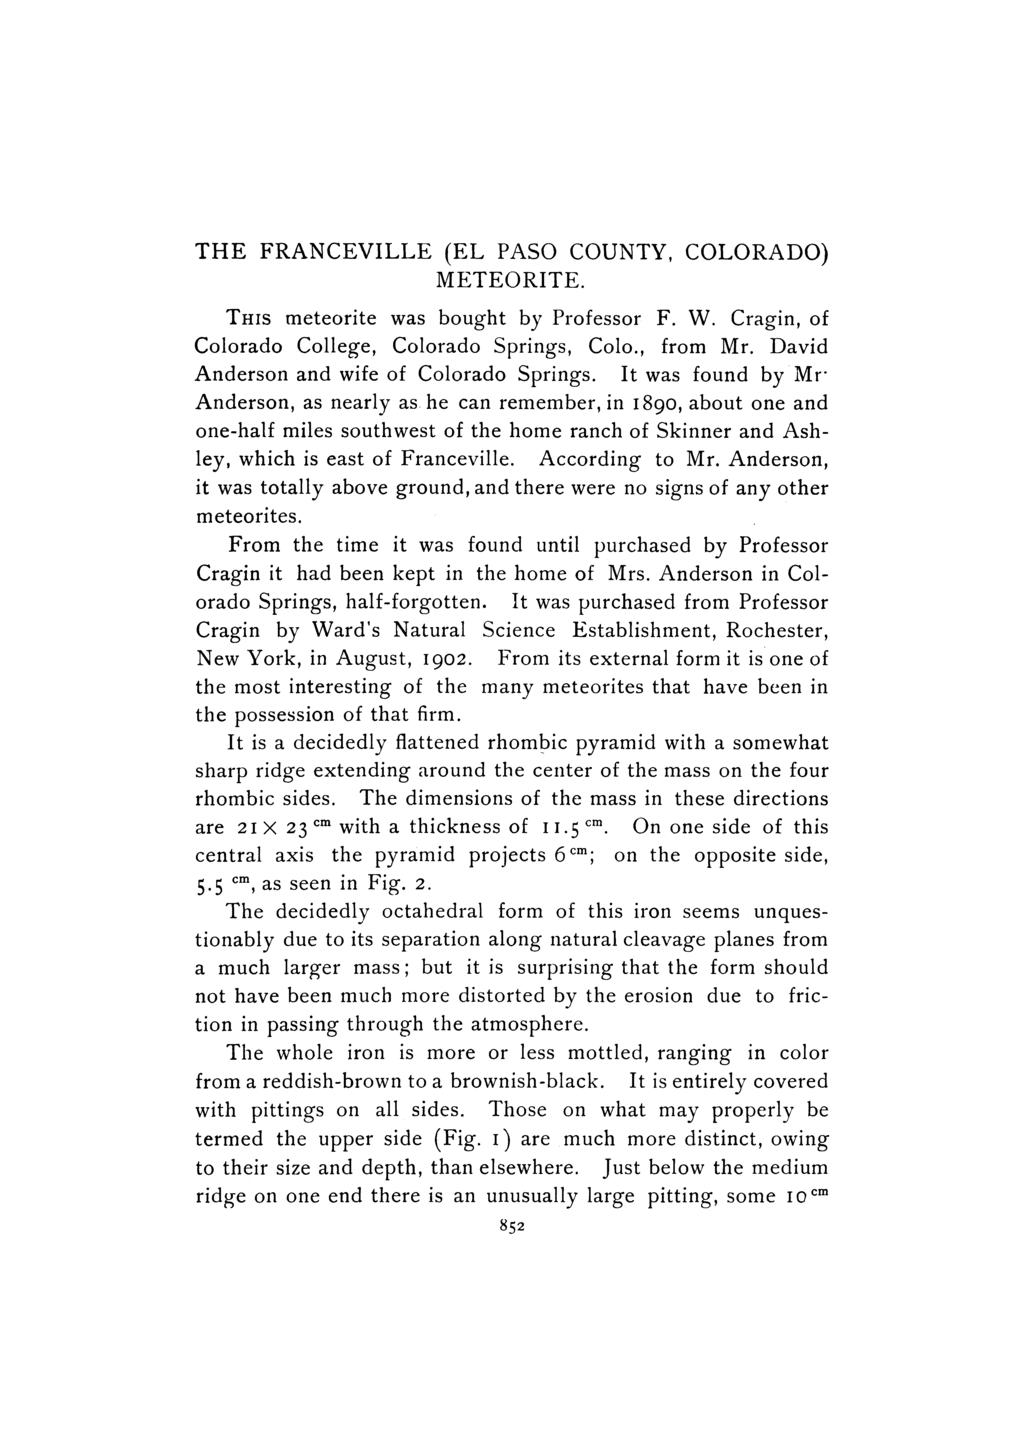 THE FRANCEVILLE (EL PASO COUNTY, COLORADO) METEORITE. THIS meteorite was bought by Professor F. W. Cragin, of Colorado College, Colorado Springs, Colo., from Mr.